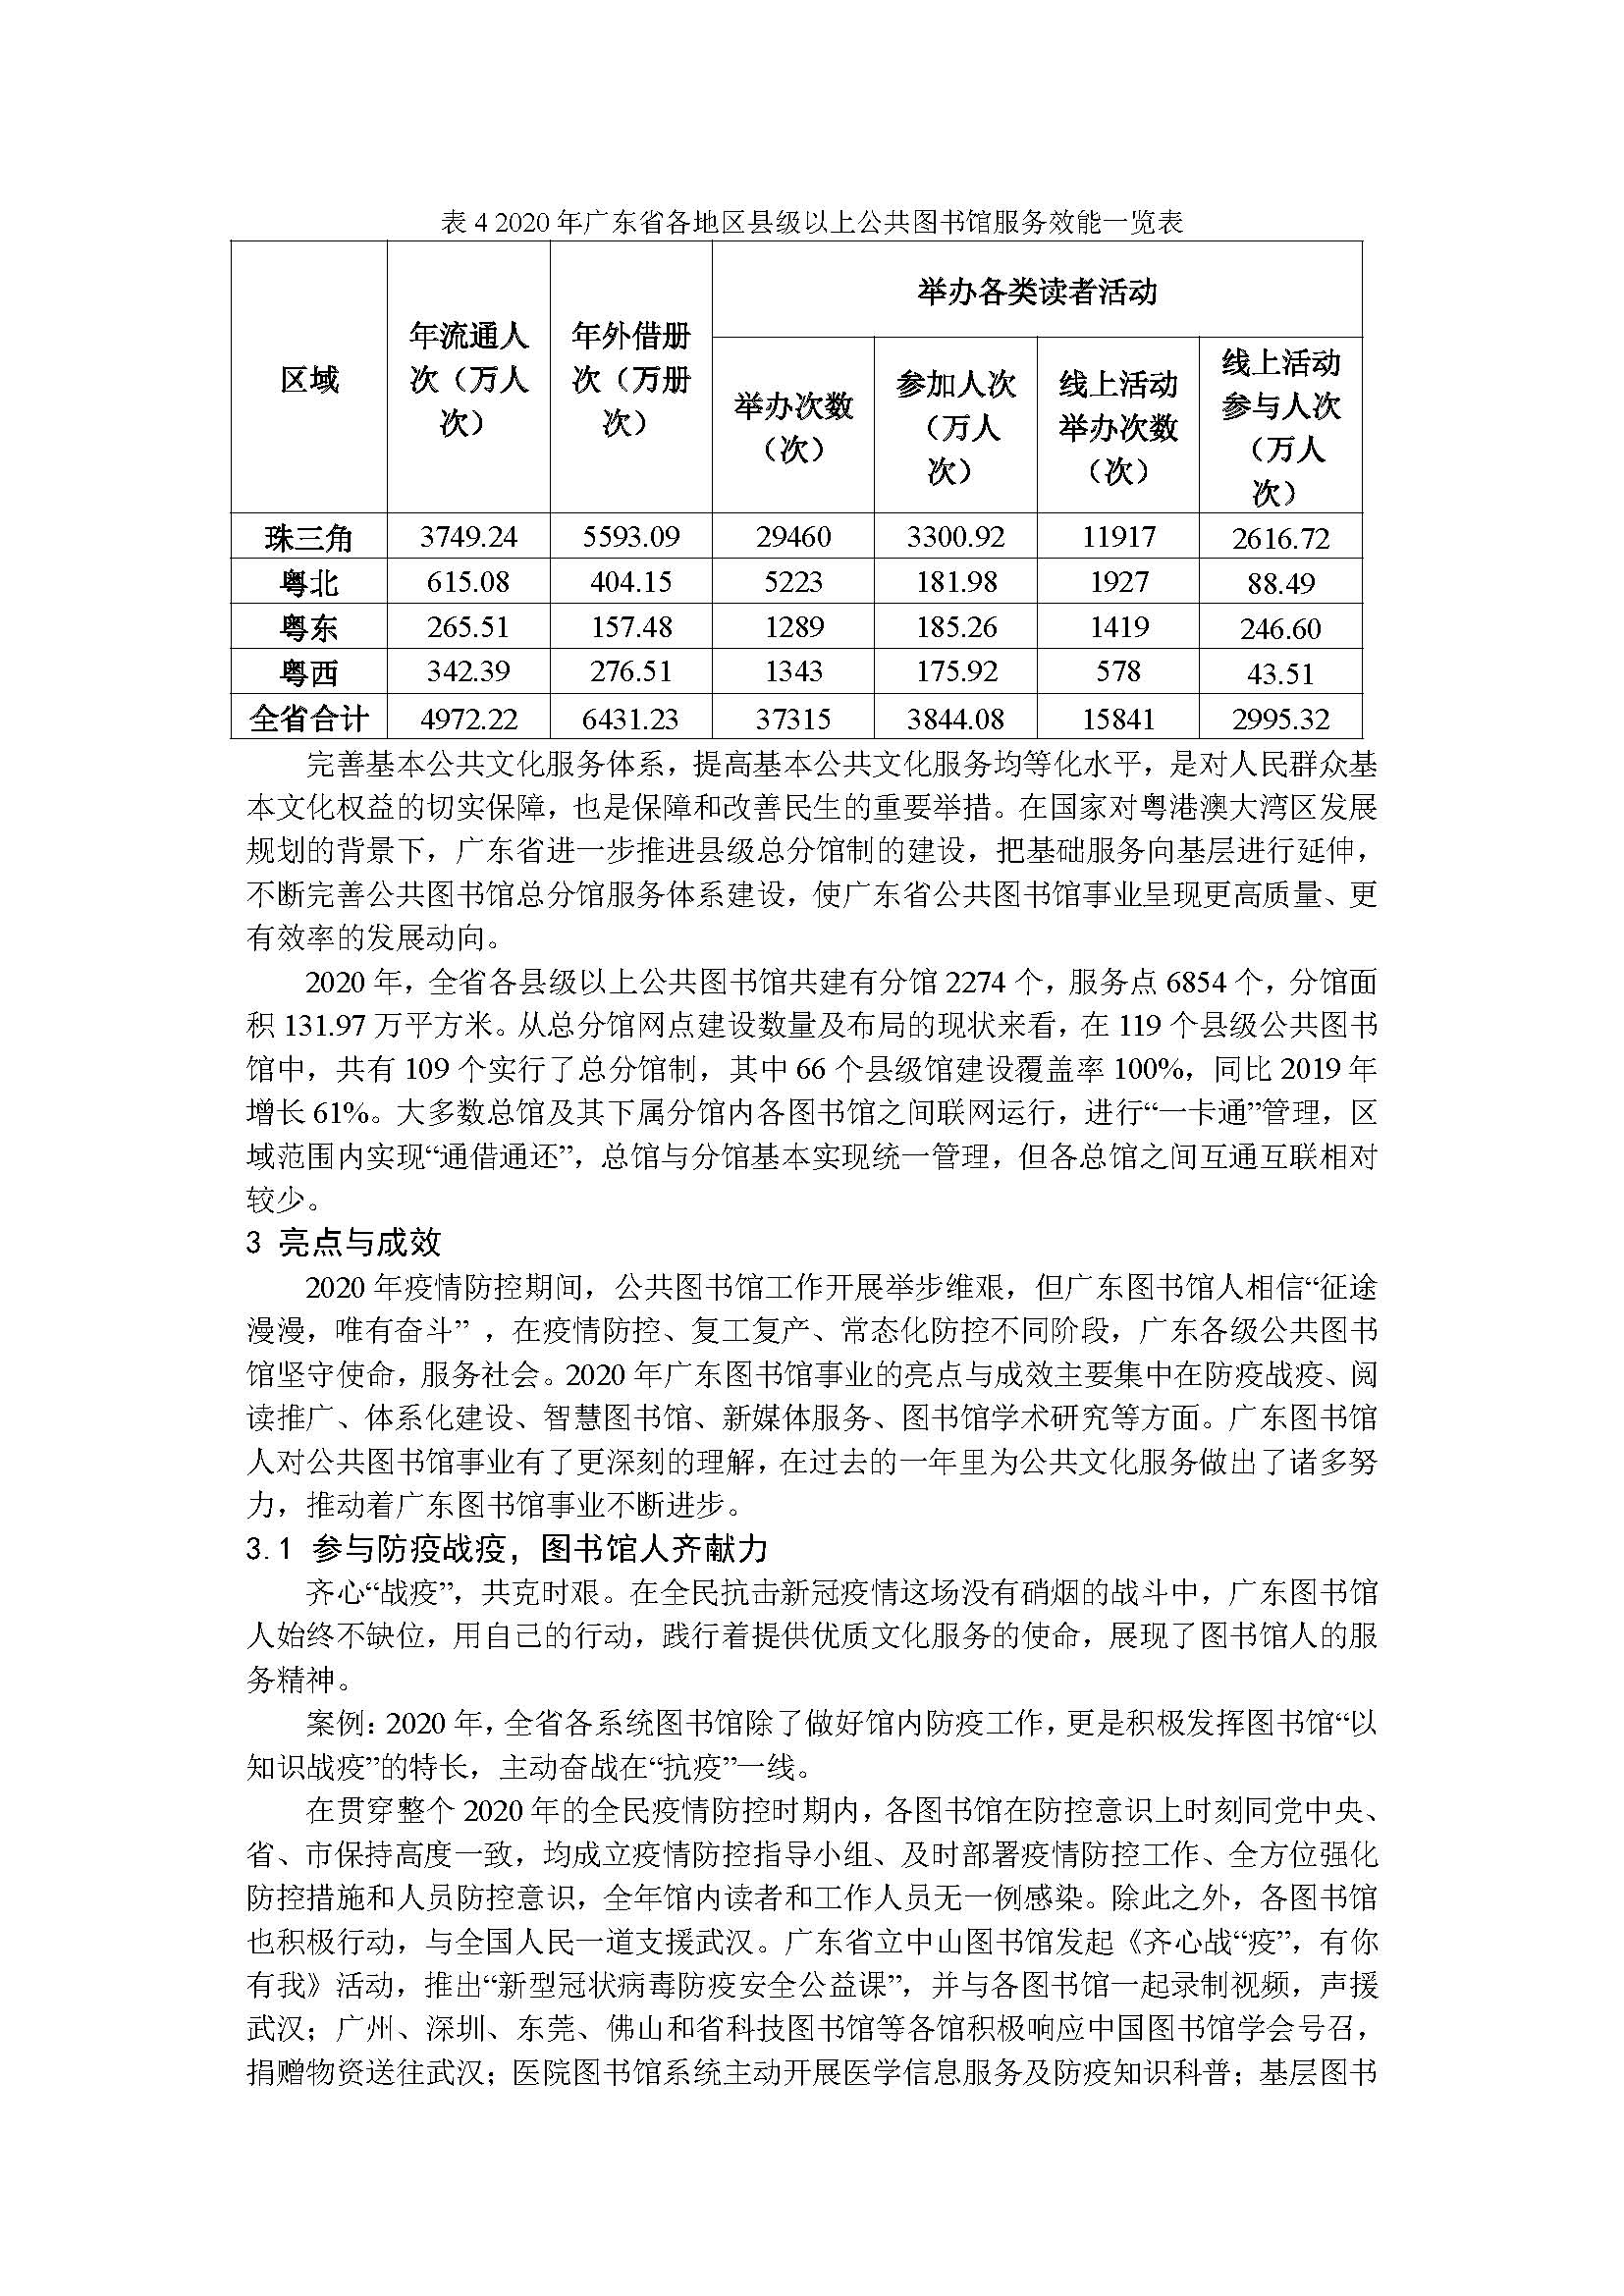 2020年广东省公共图书馆事业发展年度报告_页面_07.jpg